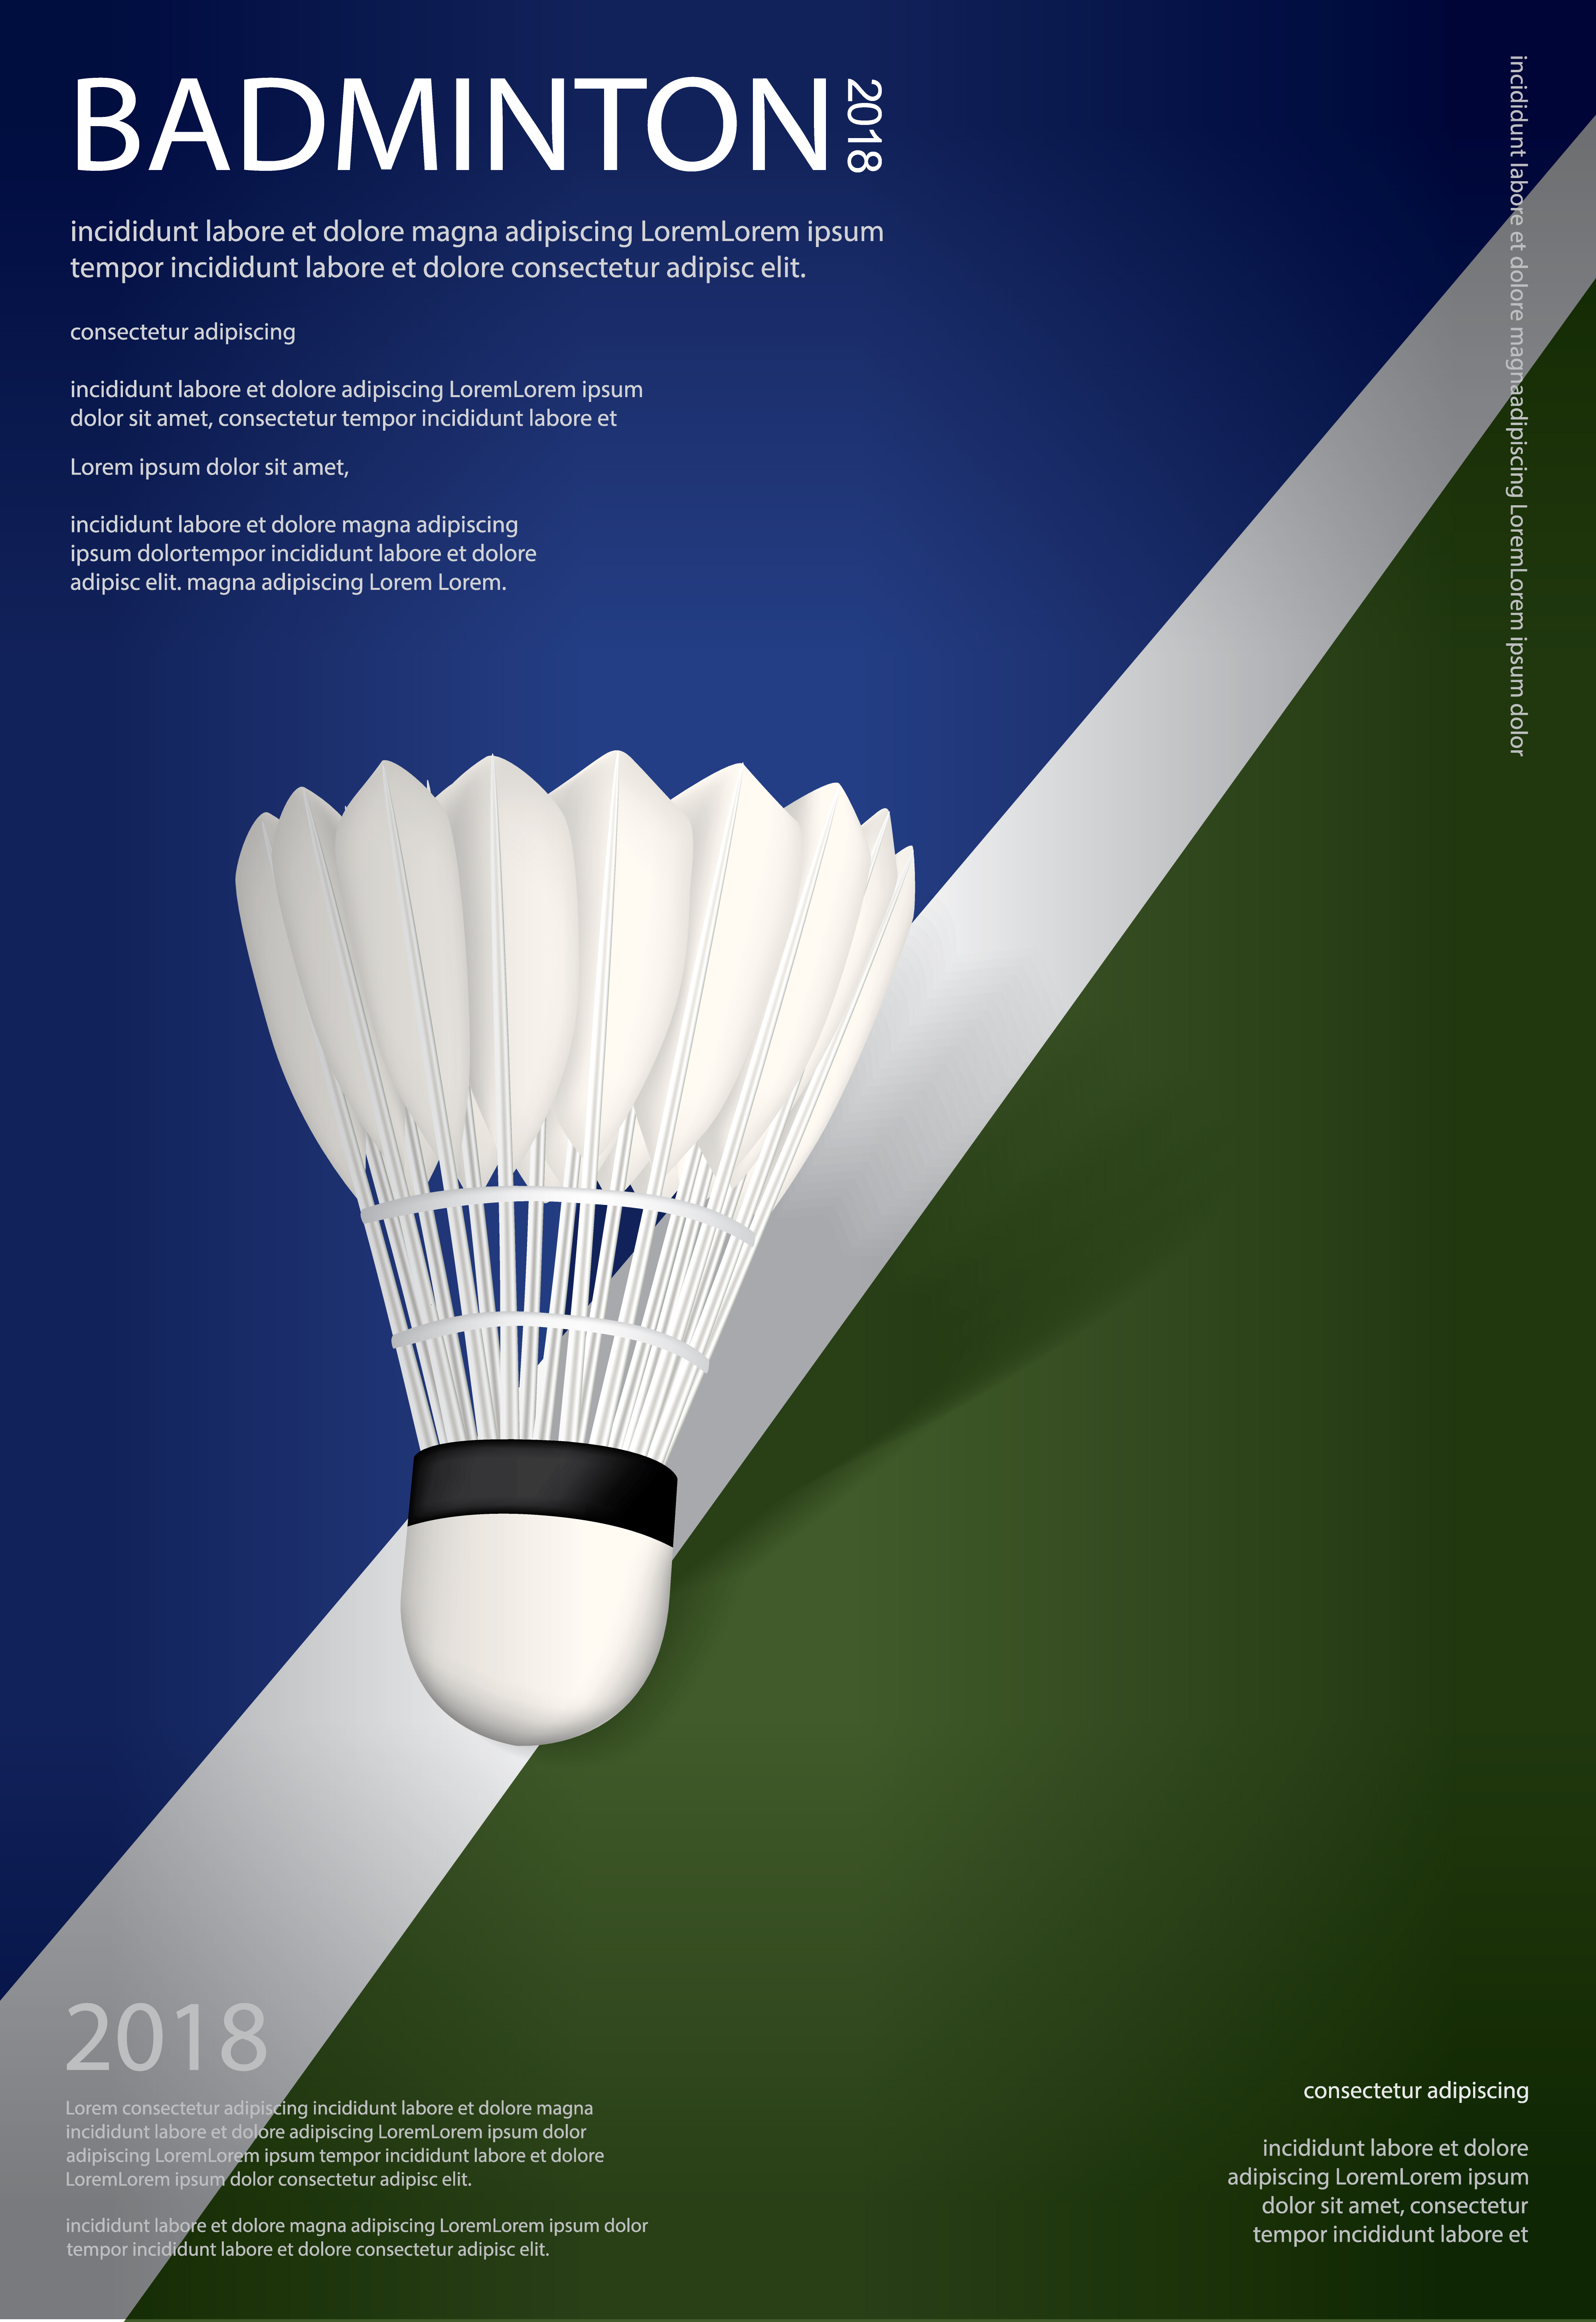 Badminton Championship Poster Vector illustration 641523 Vector Art at